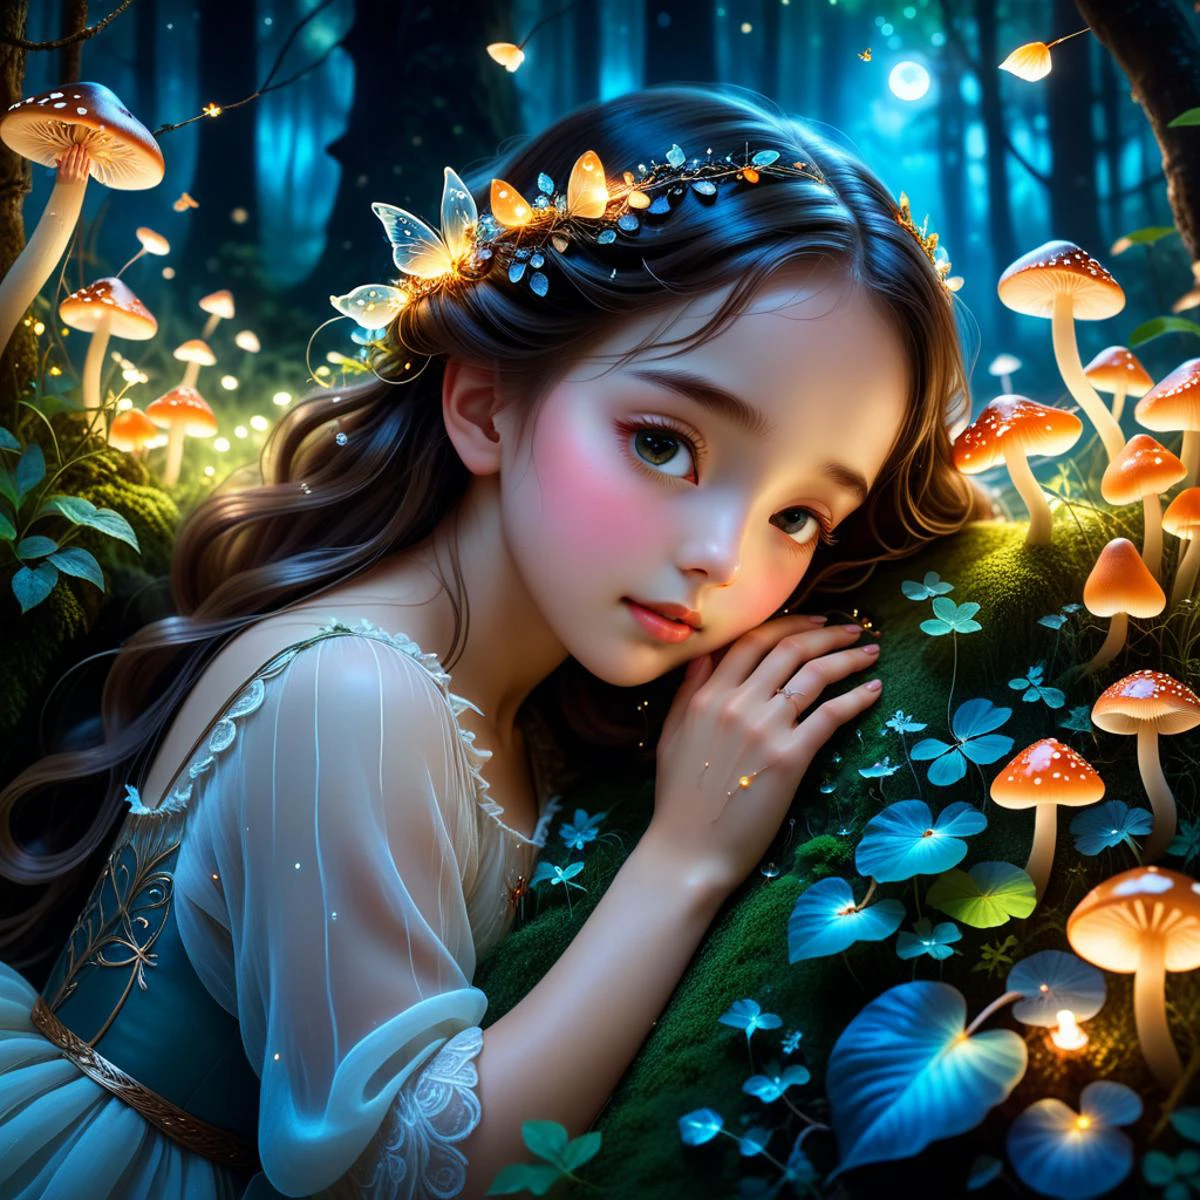 Una niña pequeña durmiendo en el abrazo de la Diosa del Bosque.,bosque magico,colores de ensueño,Noche,Hongos resplandecientes,luciérnagas brillantes,suave luz de la luna,detalles delicados,arte de fantasía,texturas detalladas,exuberante vegetación,atmósfera mágica,sereno y pacífico,hermosa y etérea,chica ocupa 1/5 de la imagen,chica en la mitad inferior de la imagen,Árboles altos,follaje denso,cielo nublado,Bosque sombrío,perspectiva dramática,grand scale,sensación de asombro,El bosque como protagonista.,estilo animado,ojos grandes,lindos rasgos faciales,Pelo suave,vestido fluido,Expresión dulce e inocente,colores vibrantes,caprichoso y encantador,maravilla infantil,hermoso y encantador,**manos detalladas,Dedos graciosos,yemas de los dedos elegantes,Posturas de manos naturales,Anatomía realista de la mano,Piel suave,venas delicadas,uñas perfectas,Cinco dedos,cinco dígitos,Estructura correcta de la mano.,sin dedos extra,dedos bien definidos**,